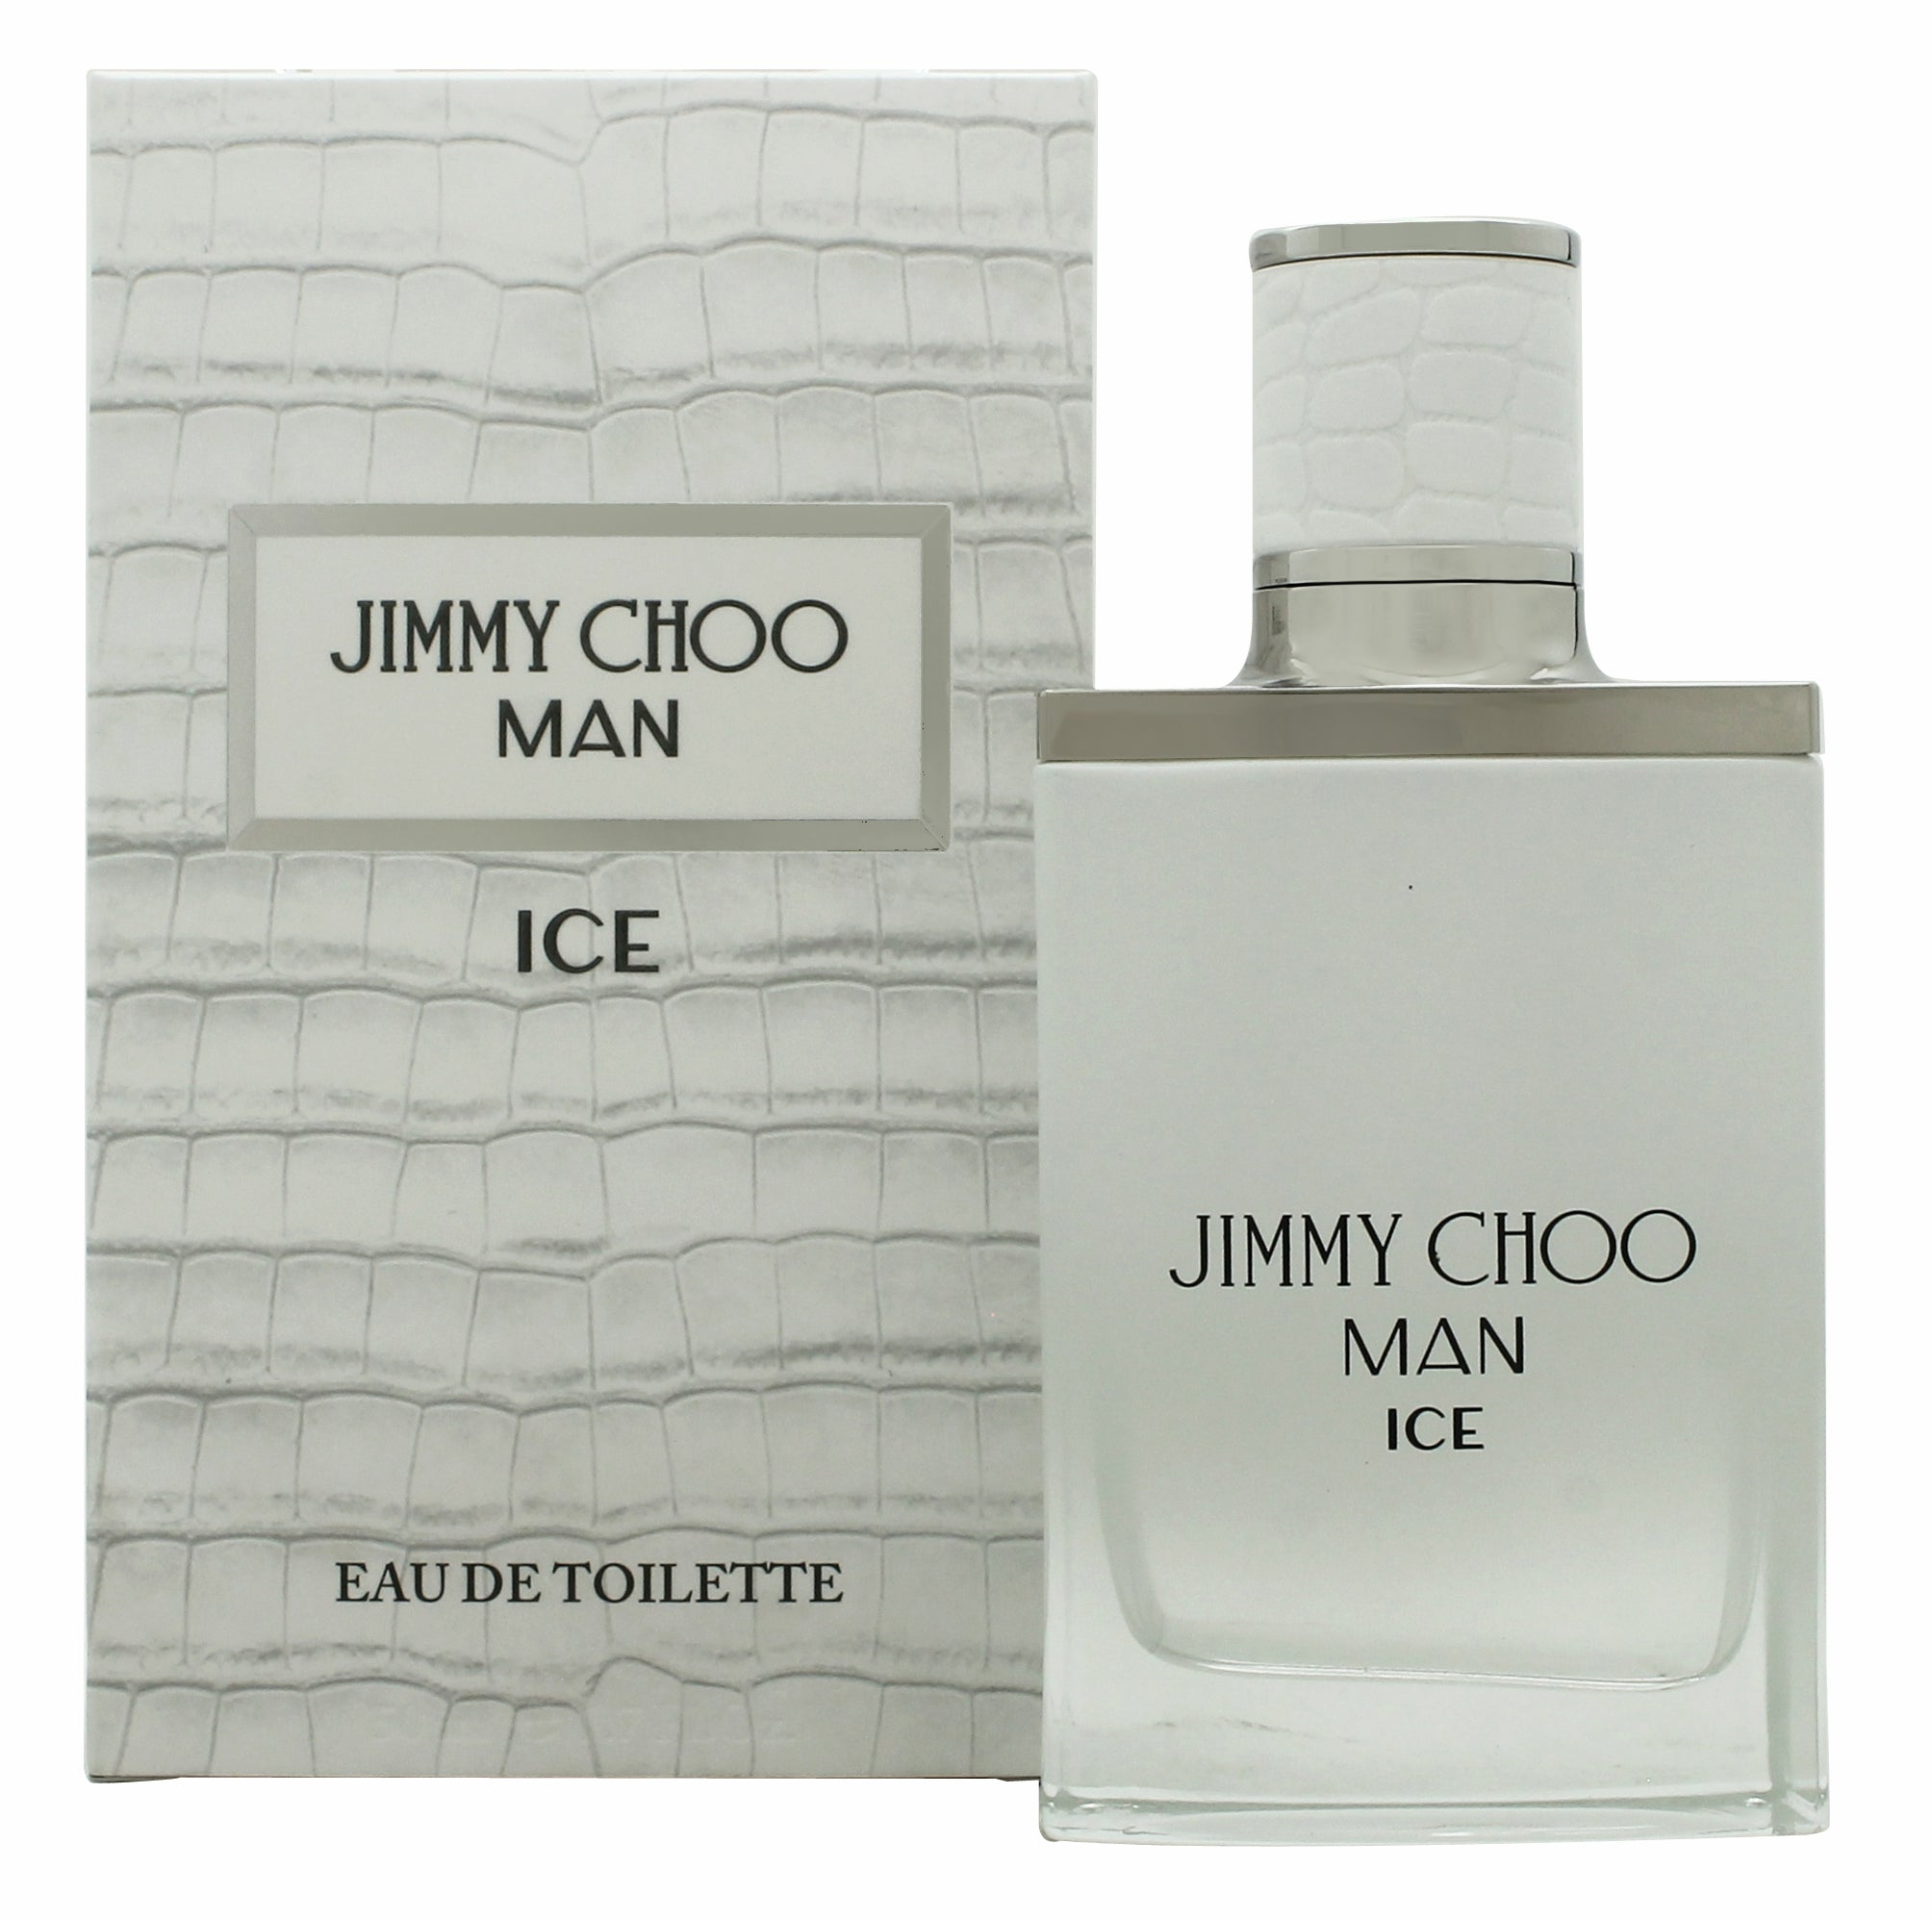 View Jimmy Choo Man Ice Eau de Toilette 50ml Spray information